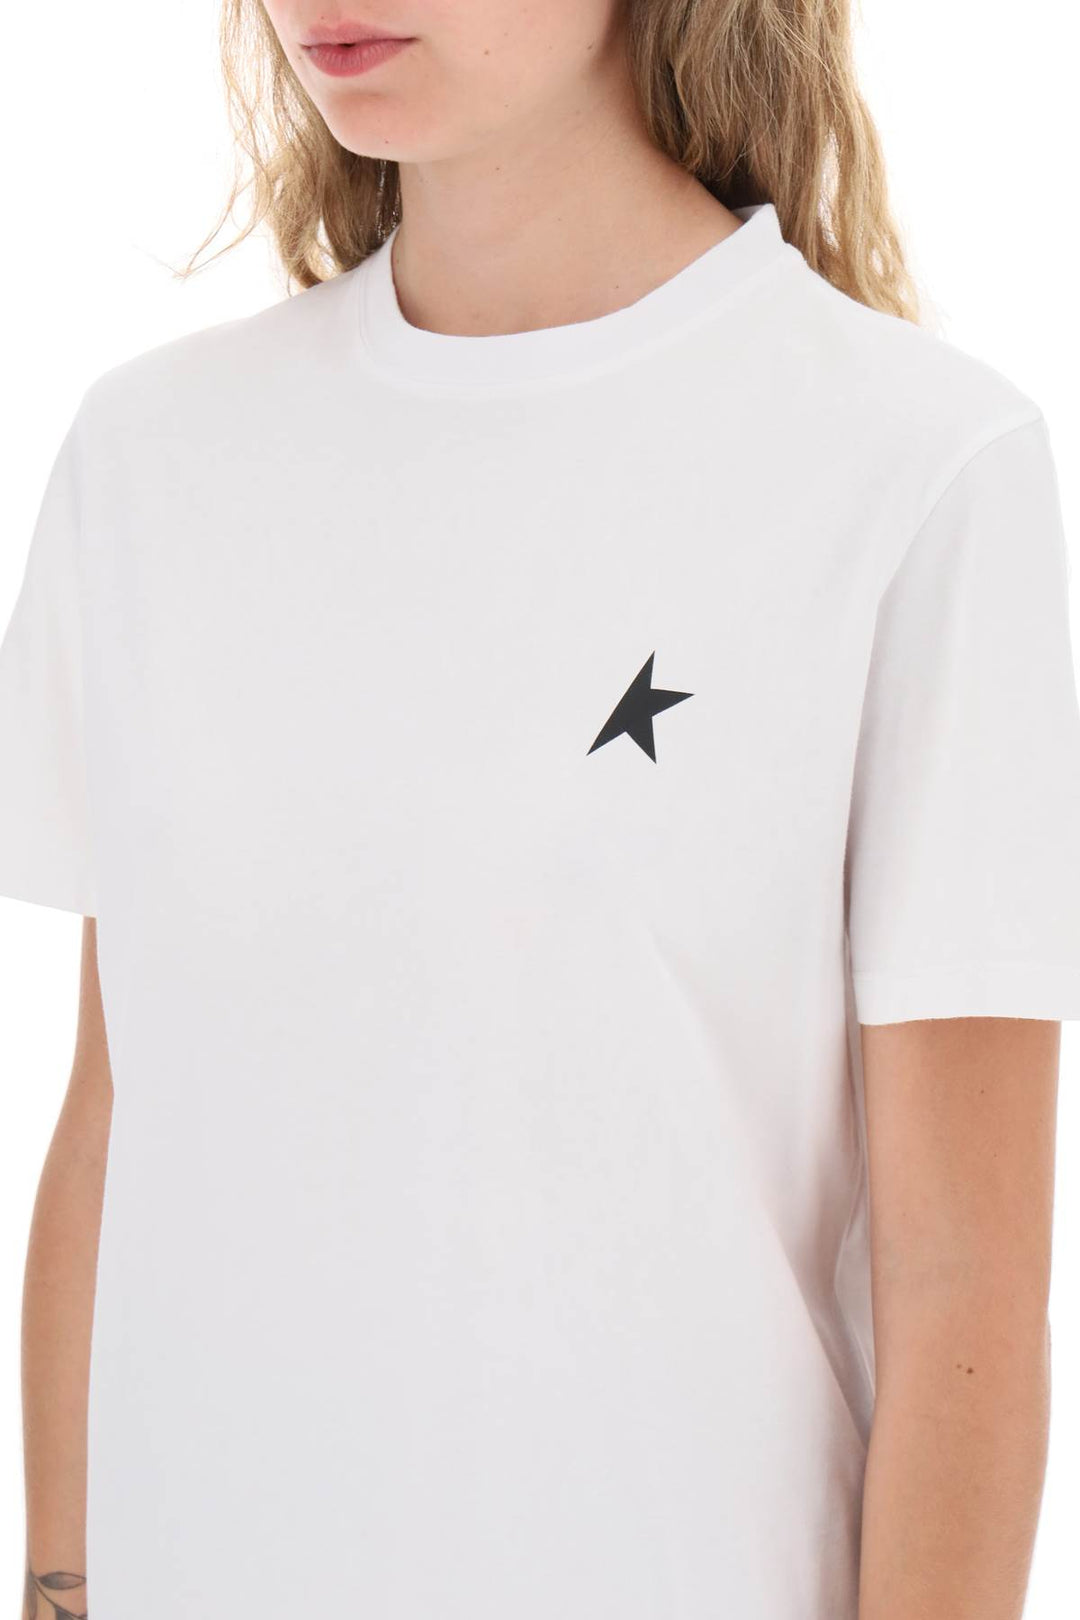 Golden Goose Regular T Shirt With Star Logo   White